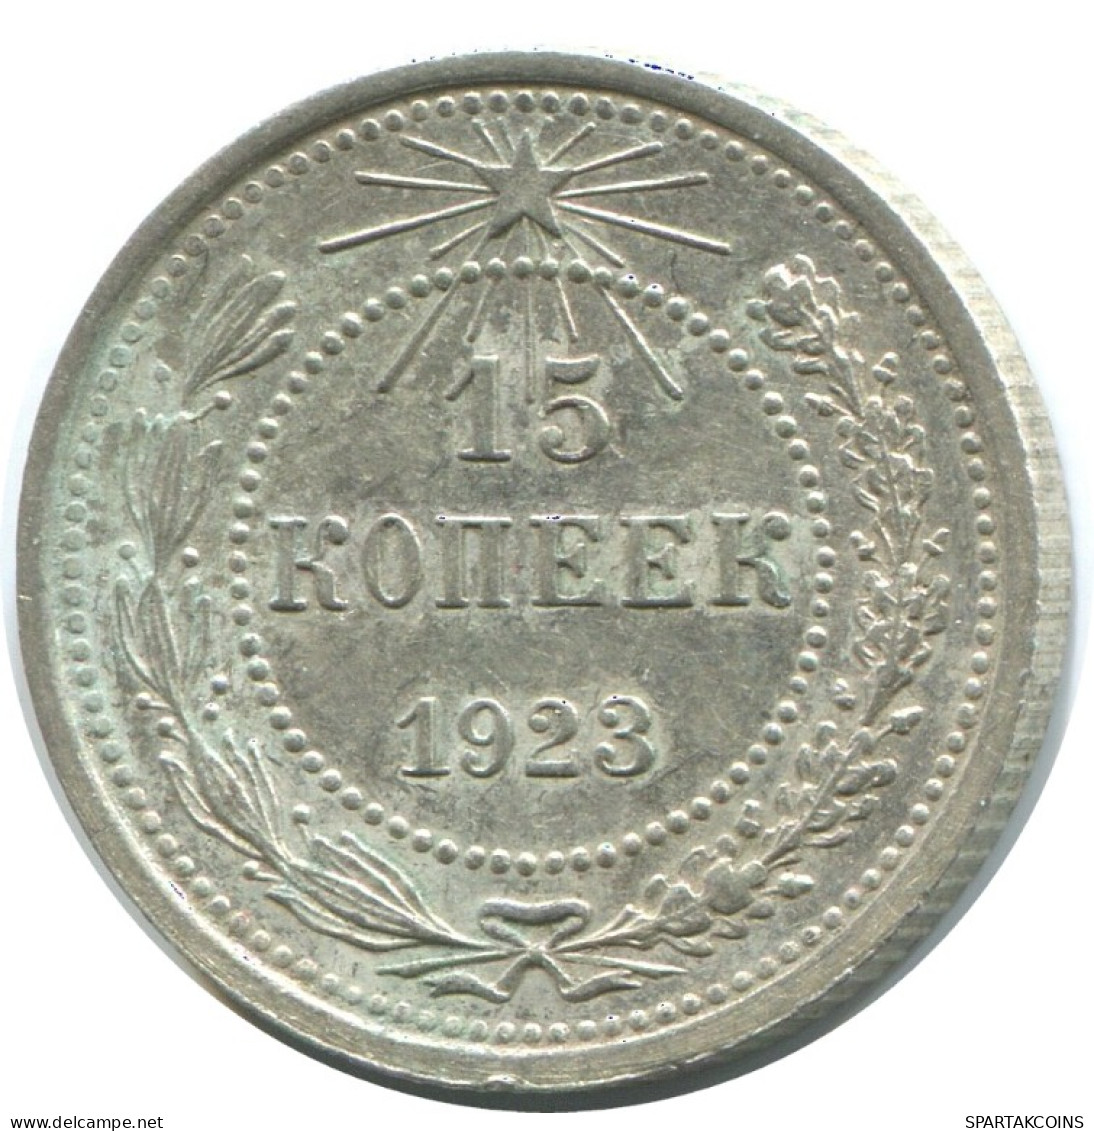 15 KOPEKS 1923 RUSSIA RSFSR SILVER Coin HIGH GRADE #AF027.4.U.A - Russland